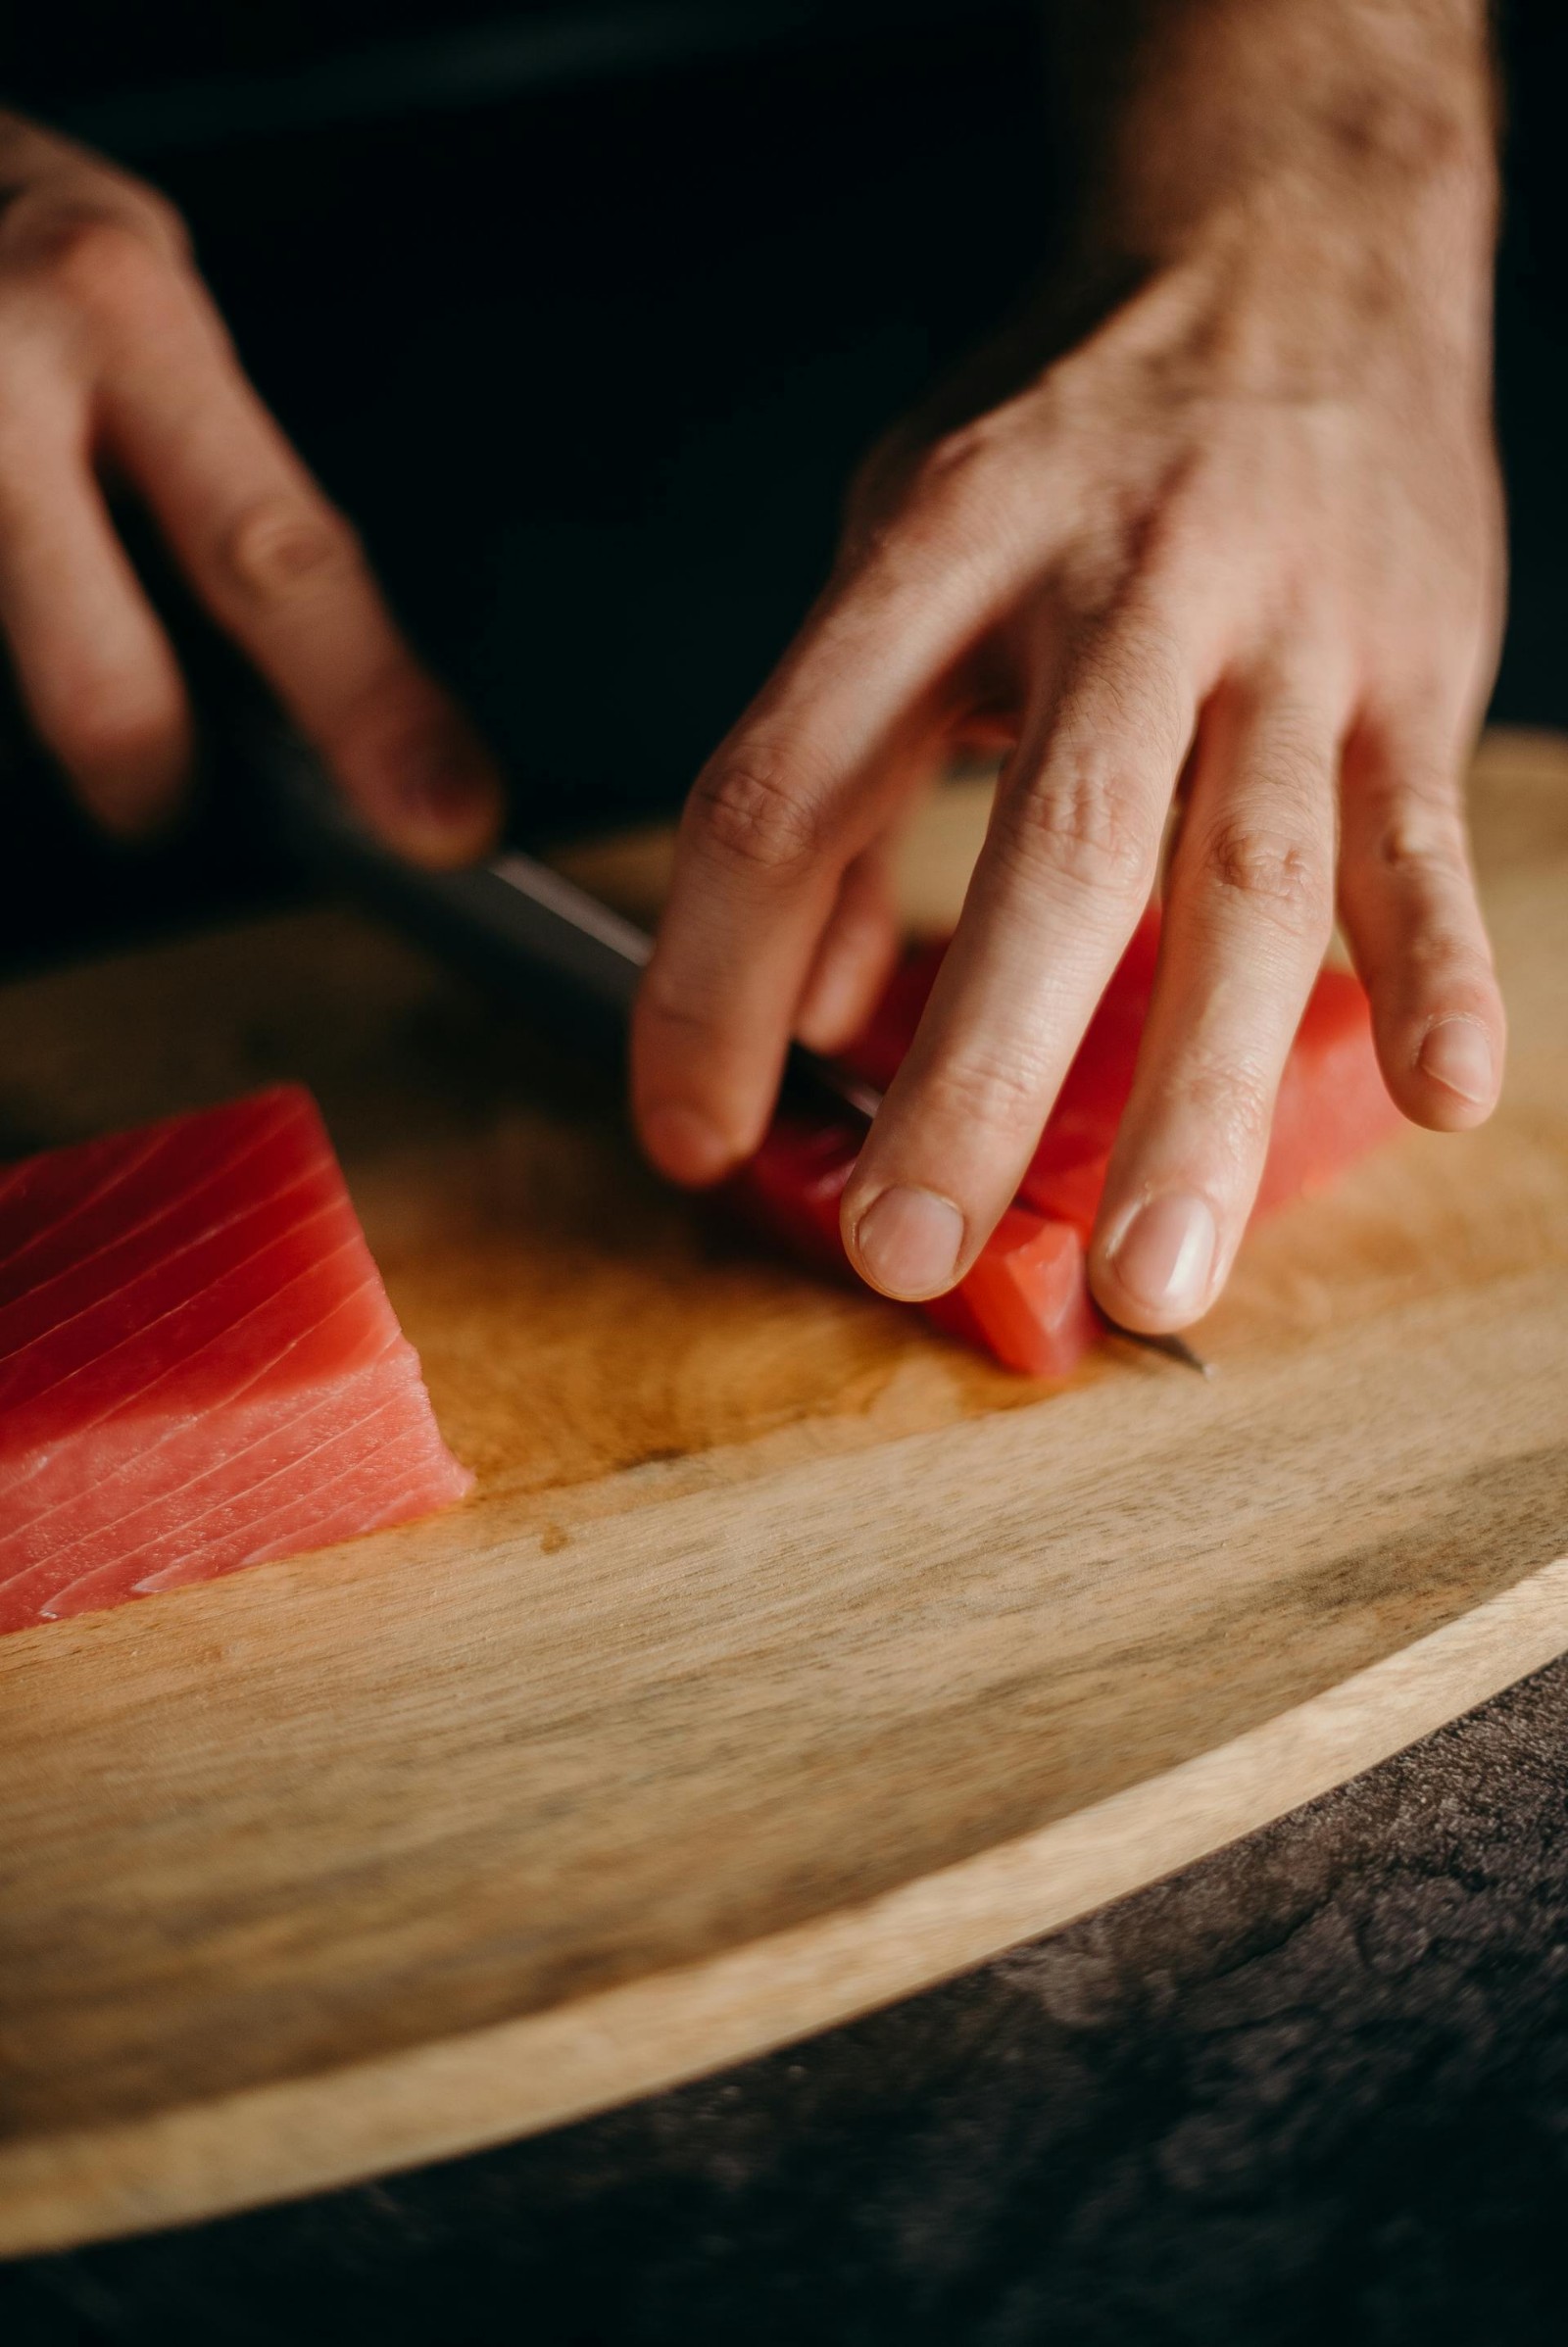 A man cutting tuna on a wooden cutting board.